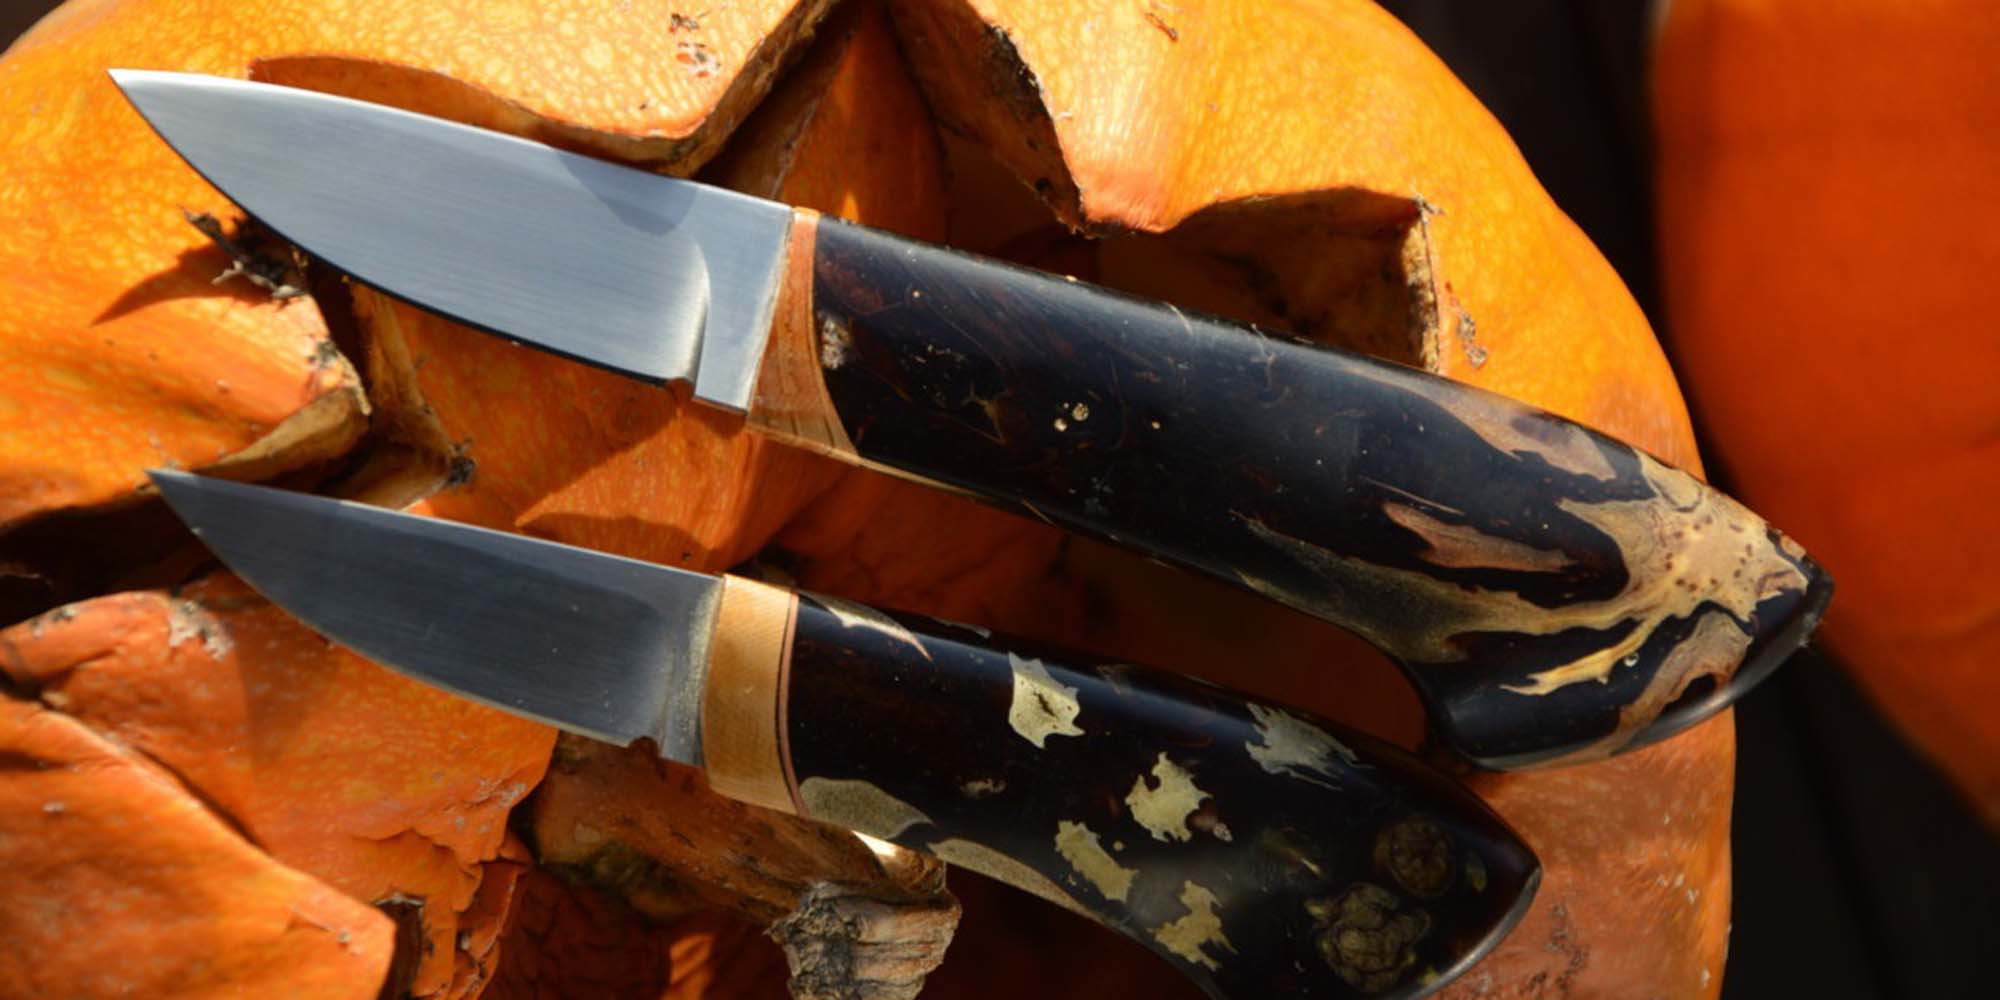 Håndlavede knive til den kræsne æstetikker